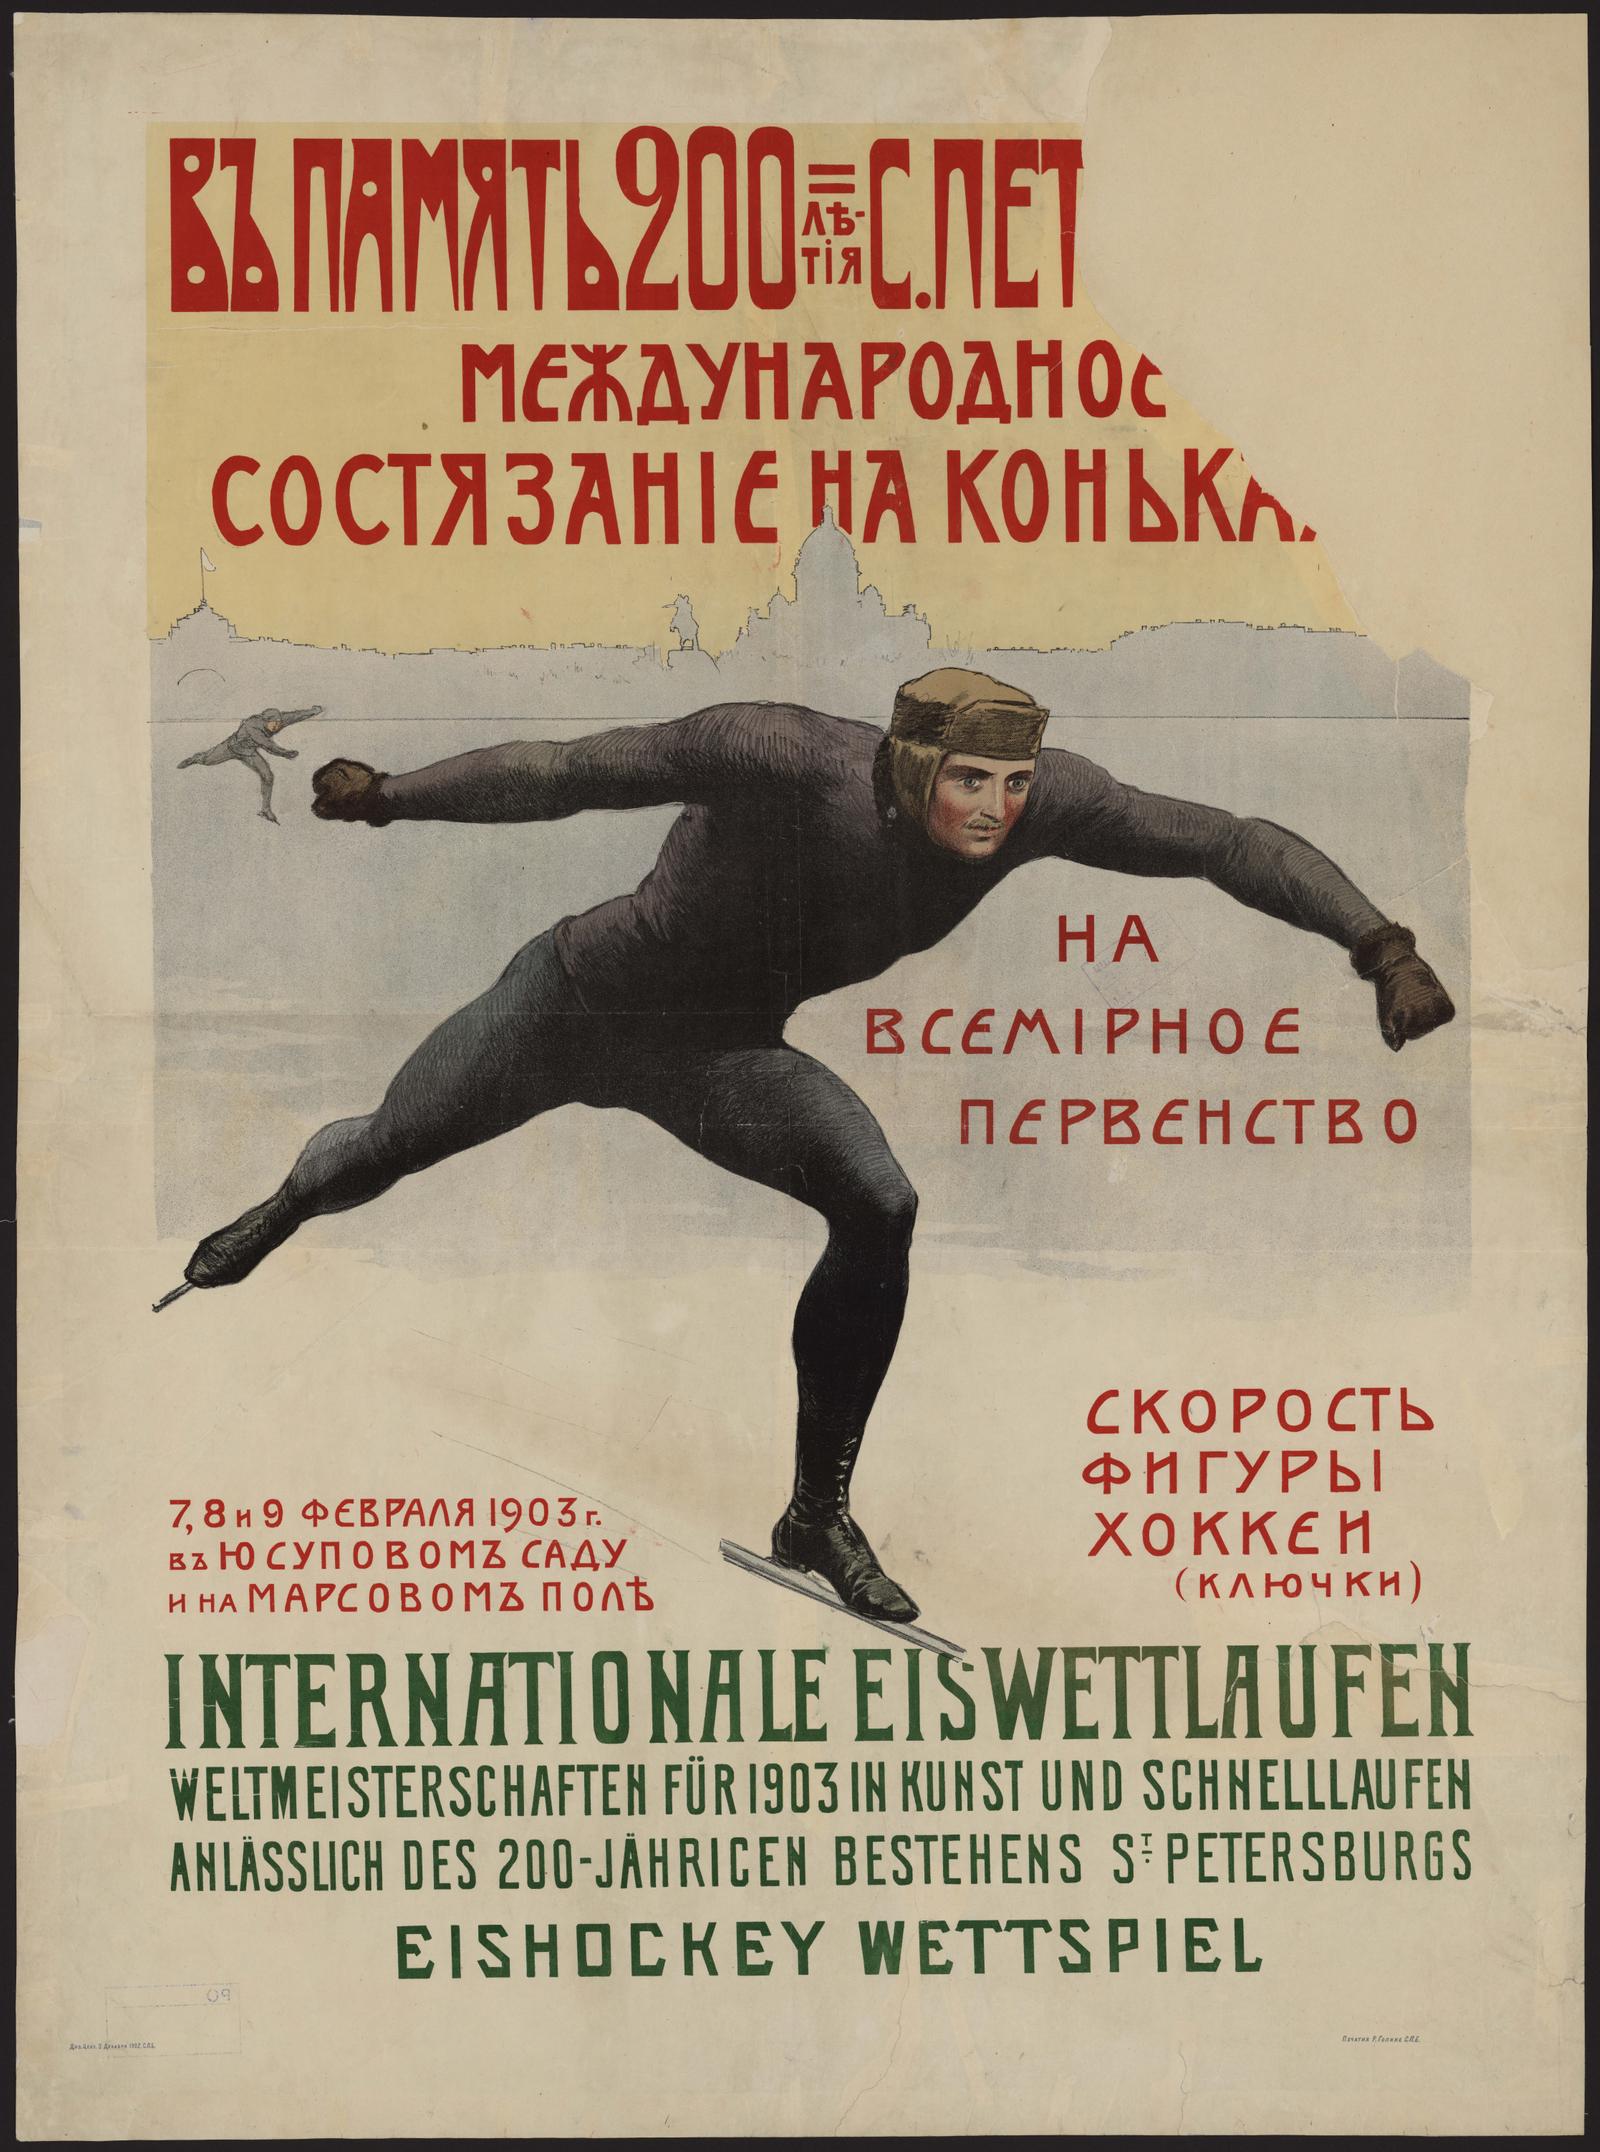 Изображение В память 200-летия Санкт-Петербурга международное состязание на коньках на всемирное первенство